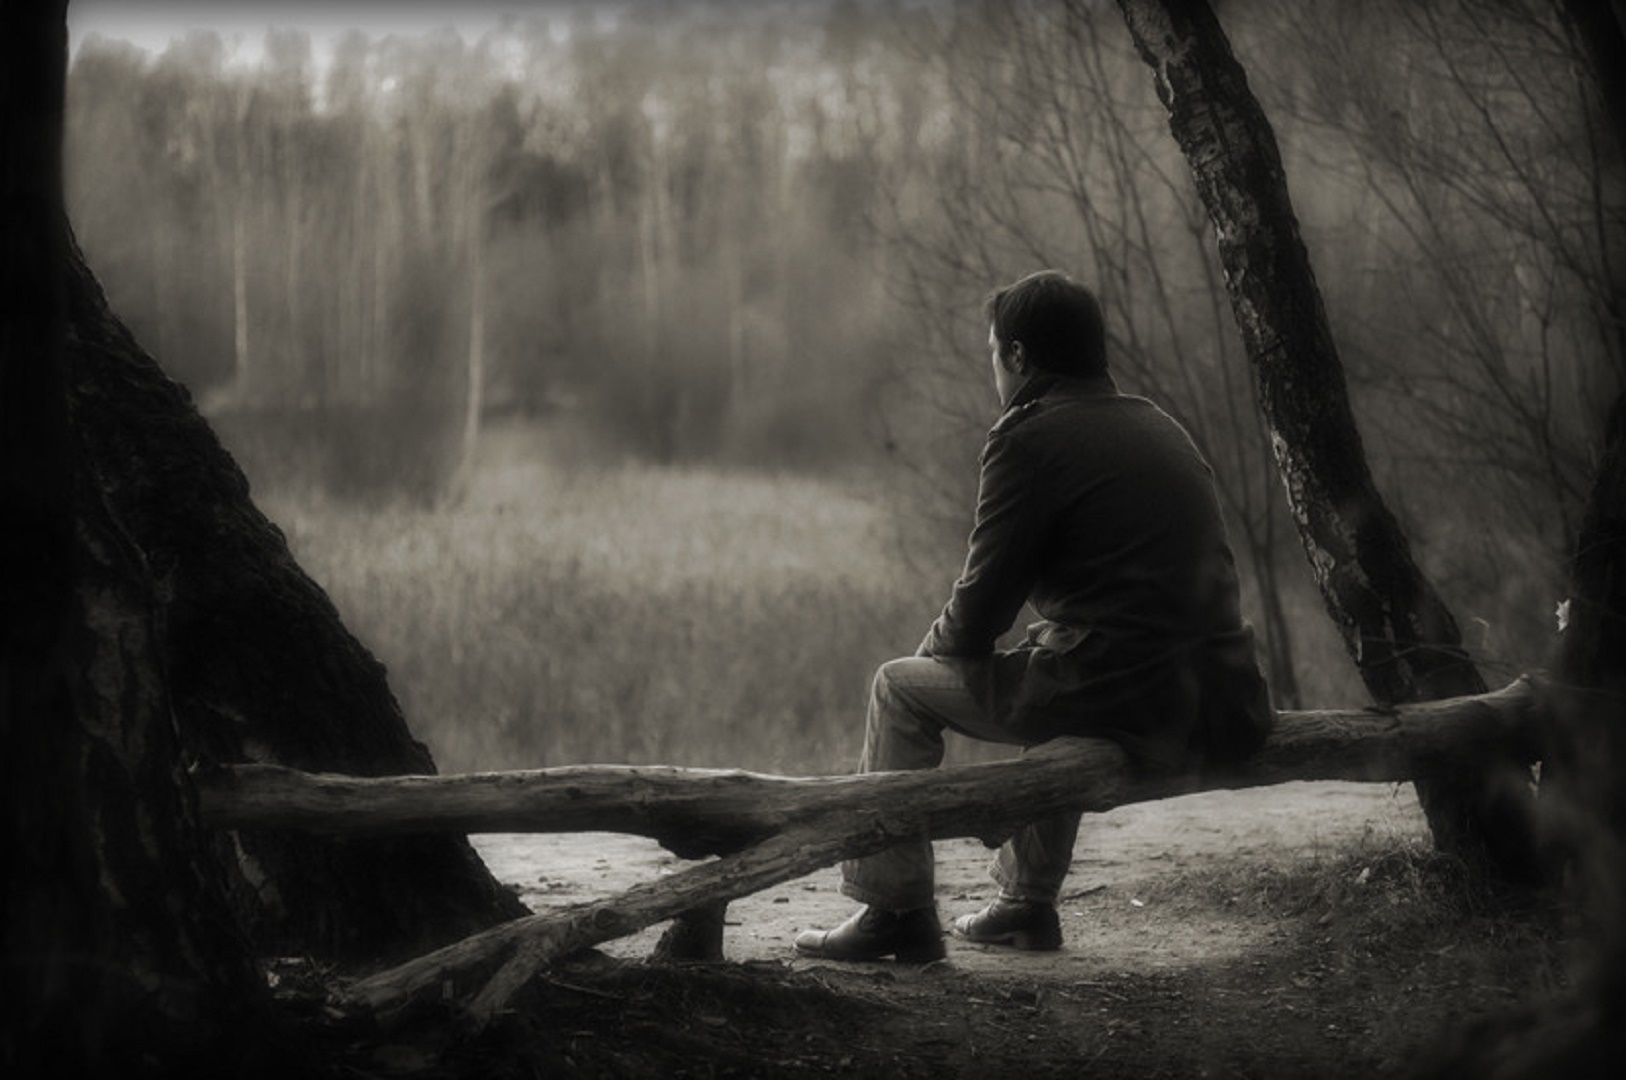 Печаль это. Одиночество тоска. Глубокая печаль. Одинокая жизнь. Грусть о прошлом.